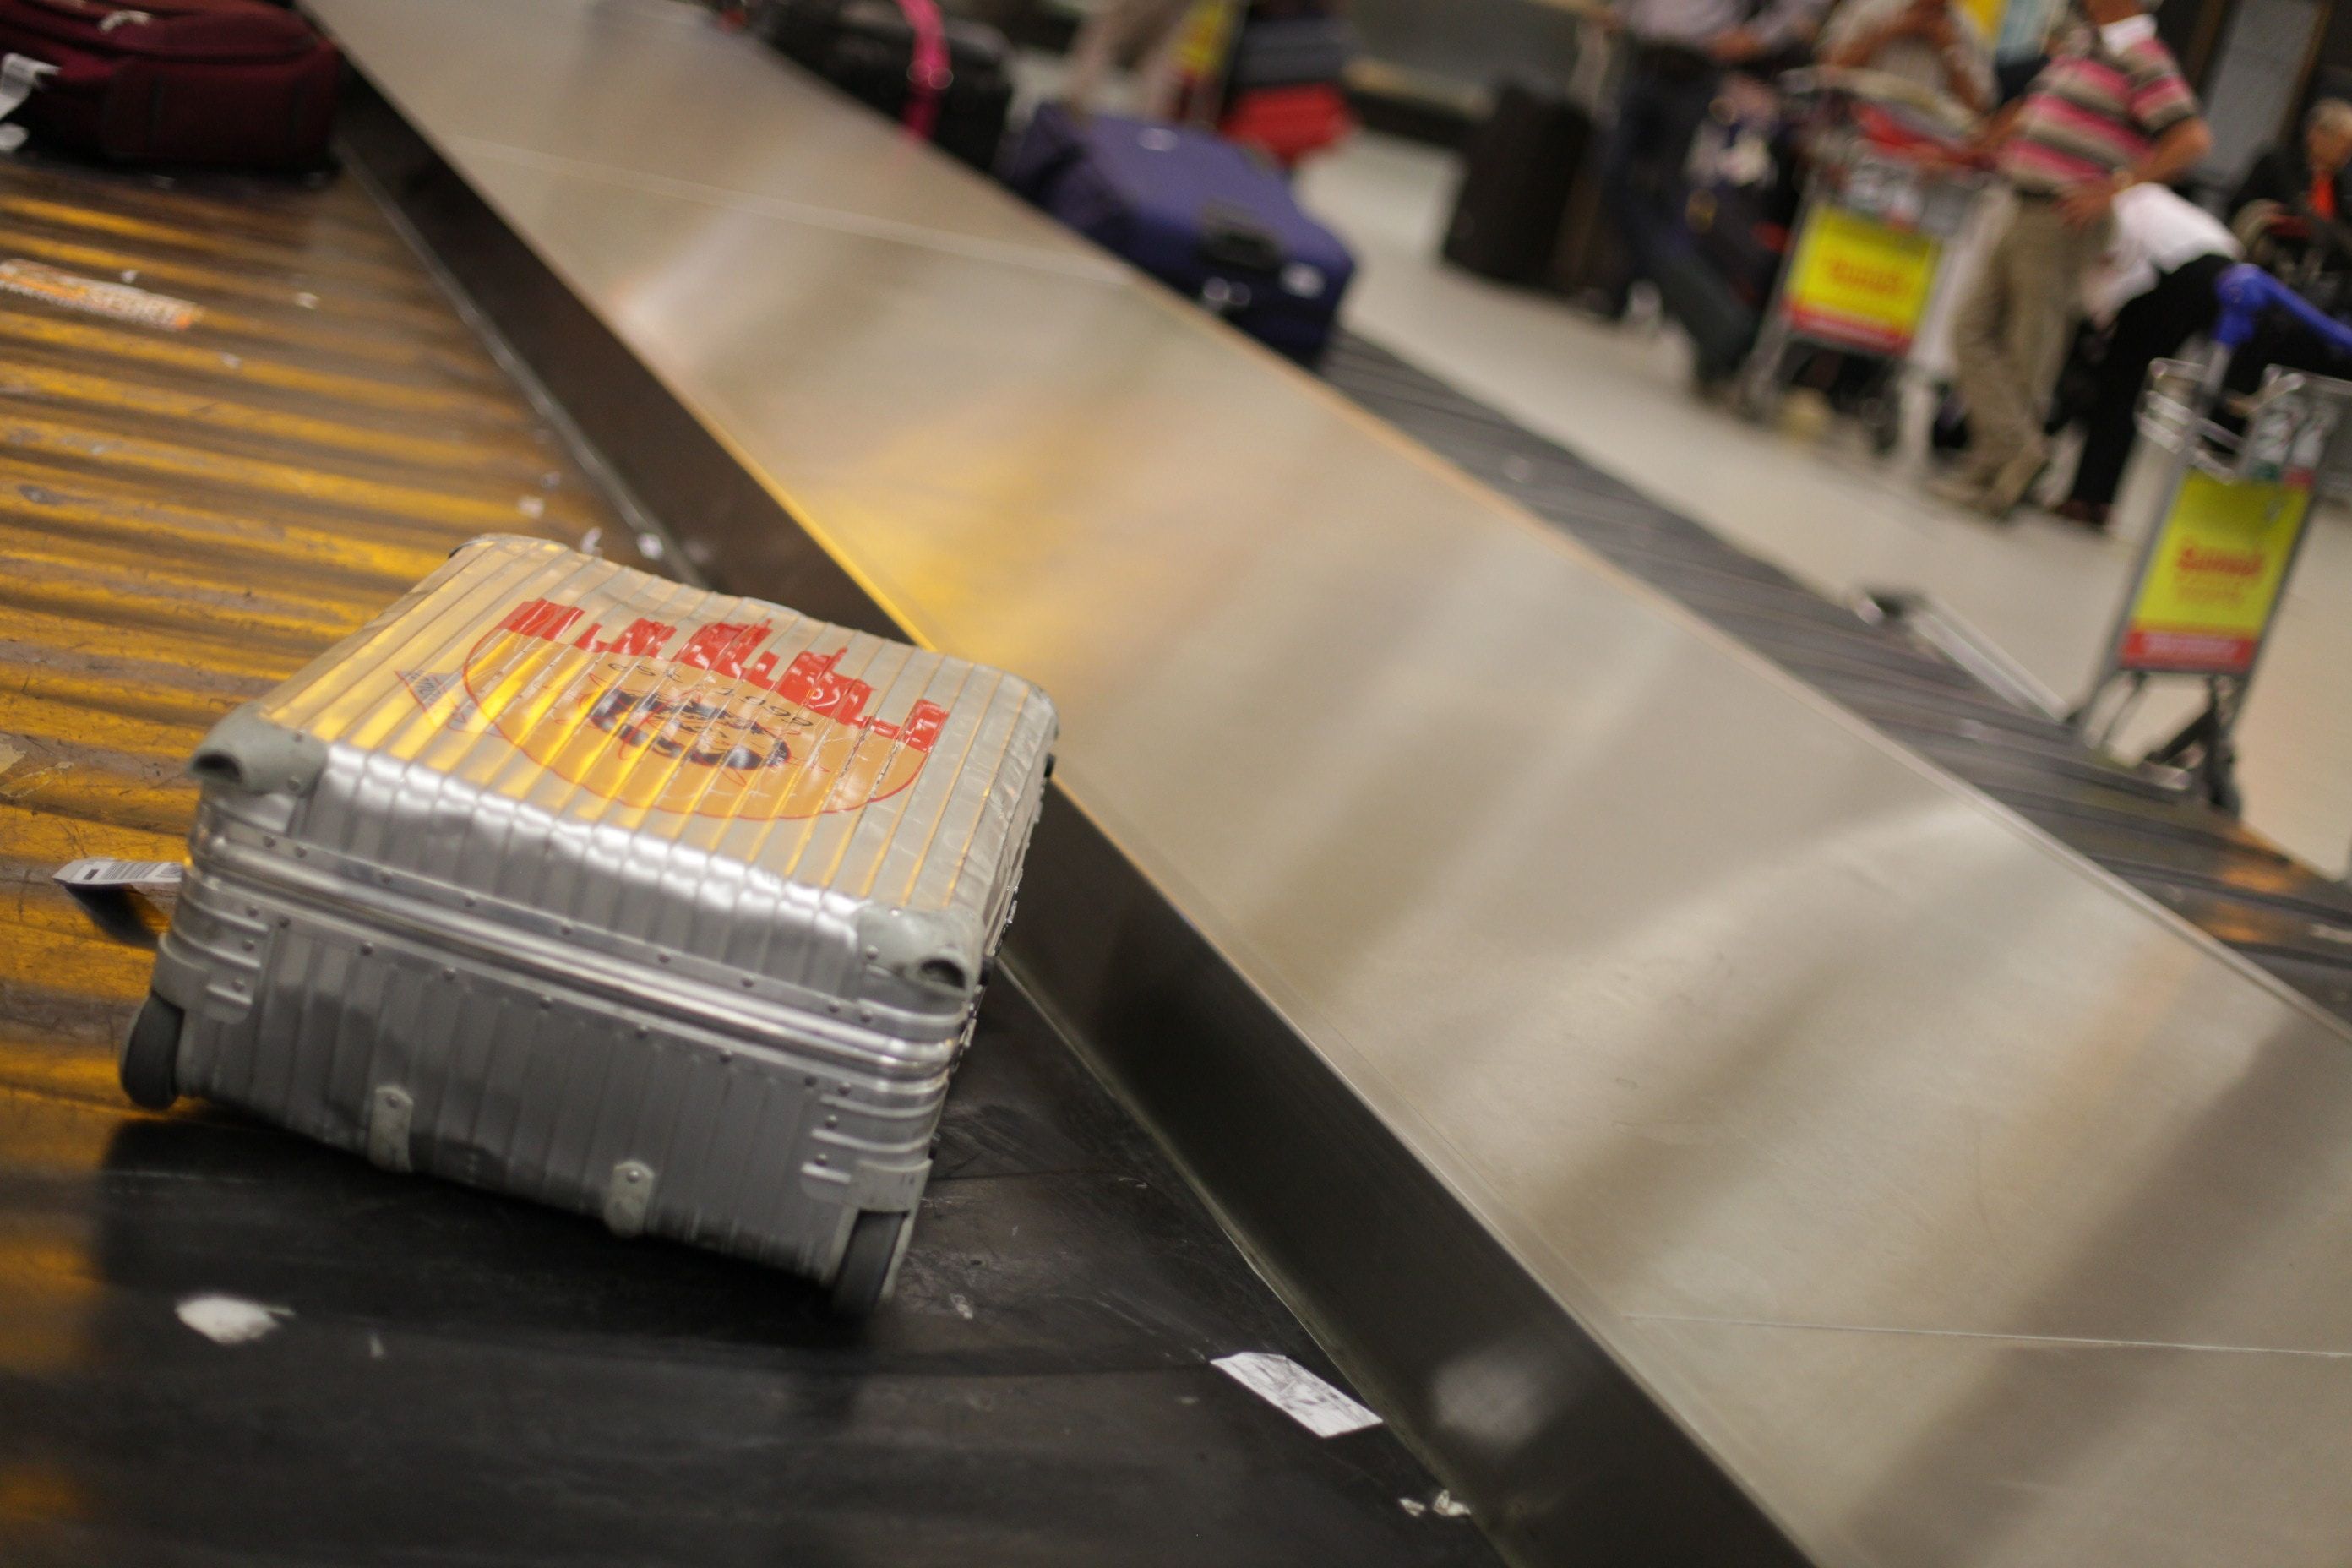 Які авіакомпанії перевозять багаж найгірше